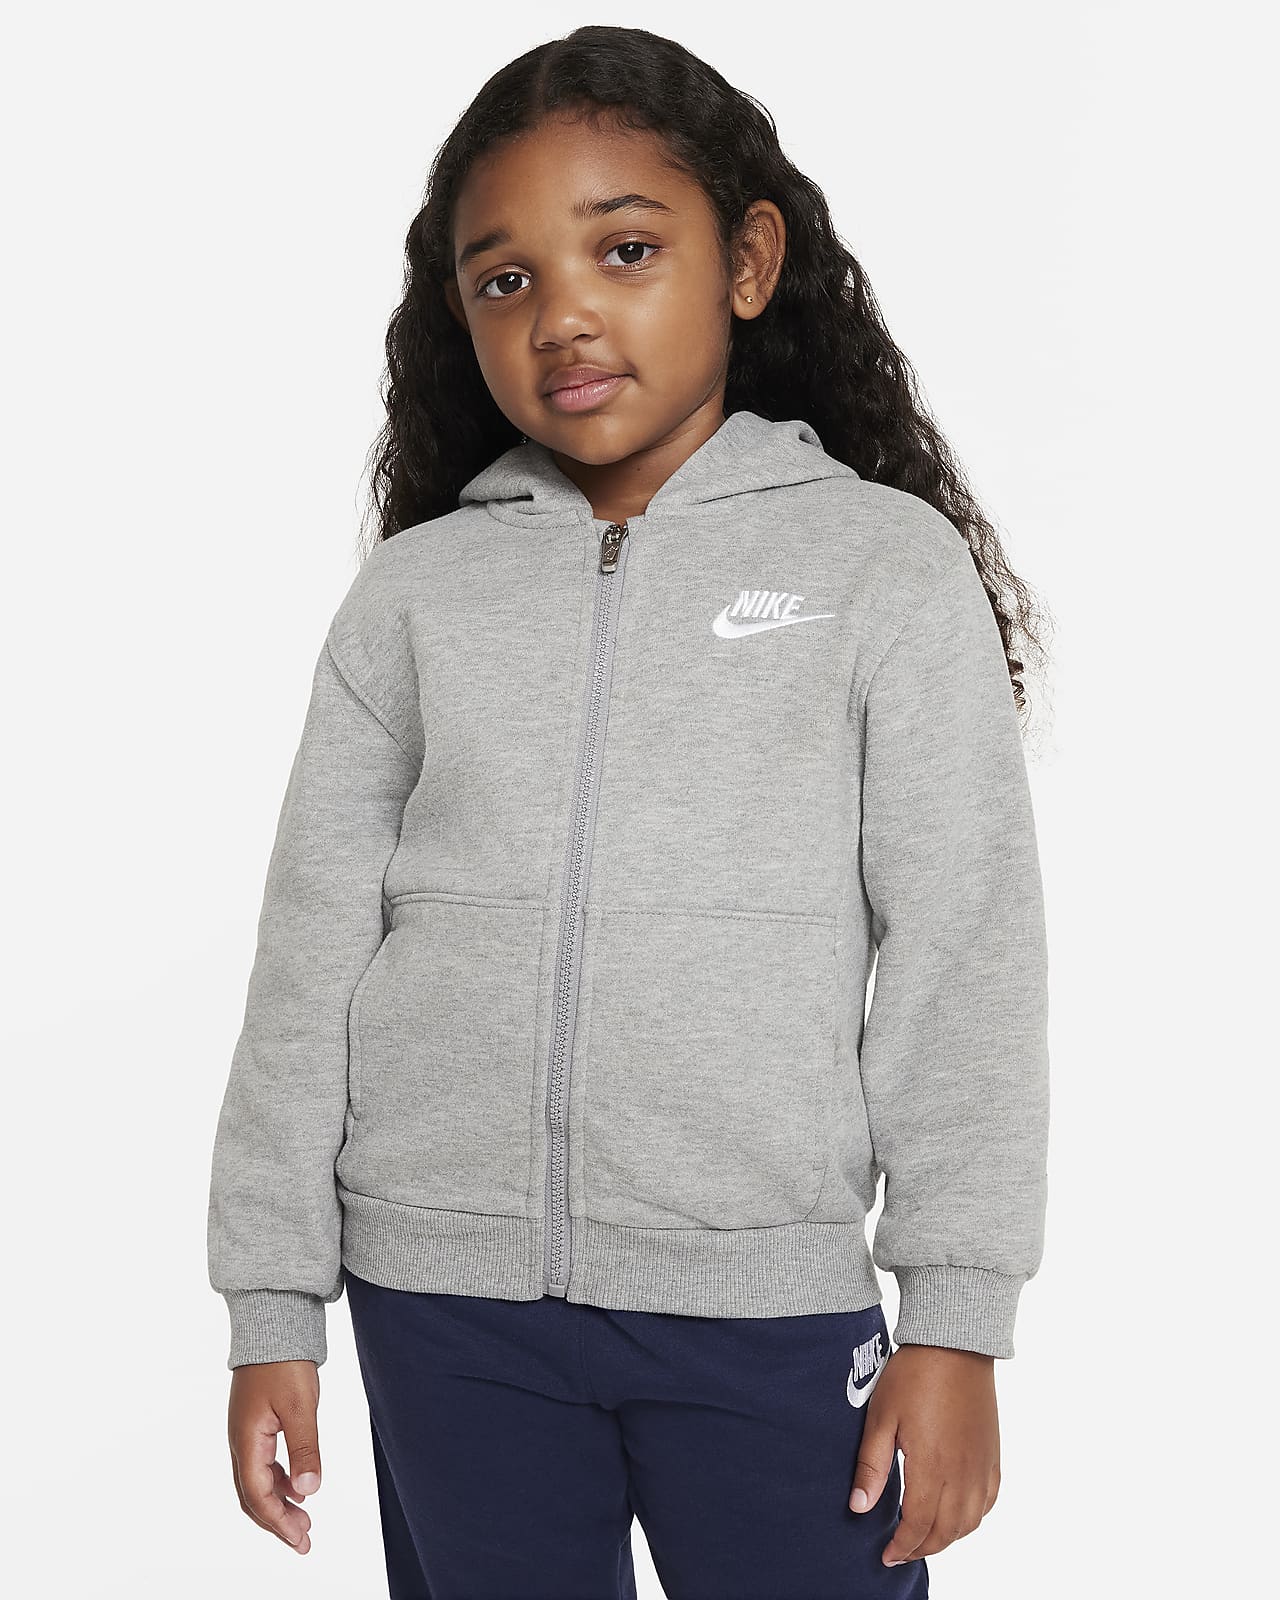 Sportswear Fleece Club Nike Hoodie. Full-Zip Kids Little